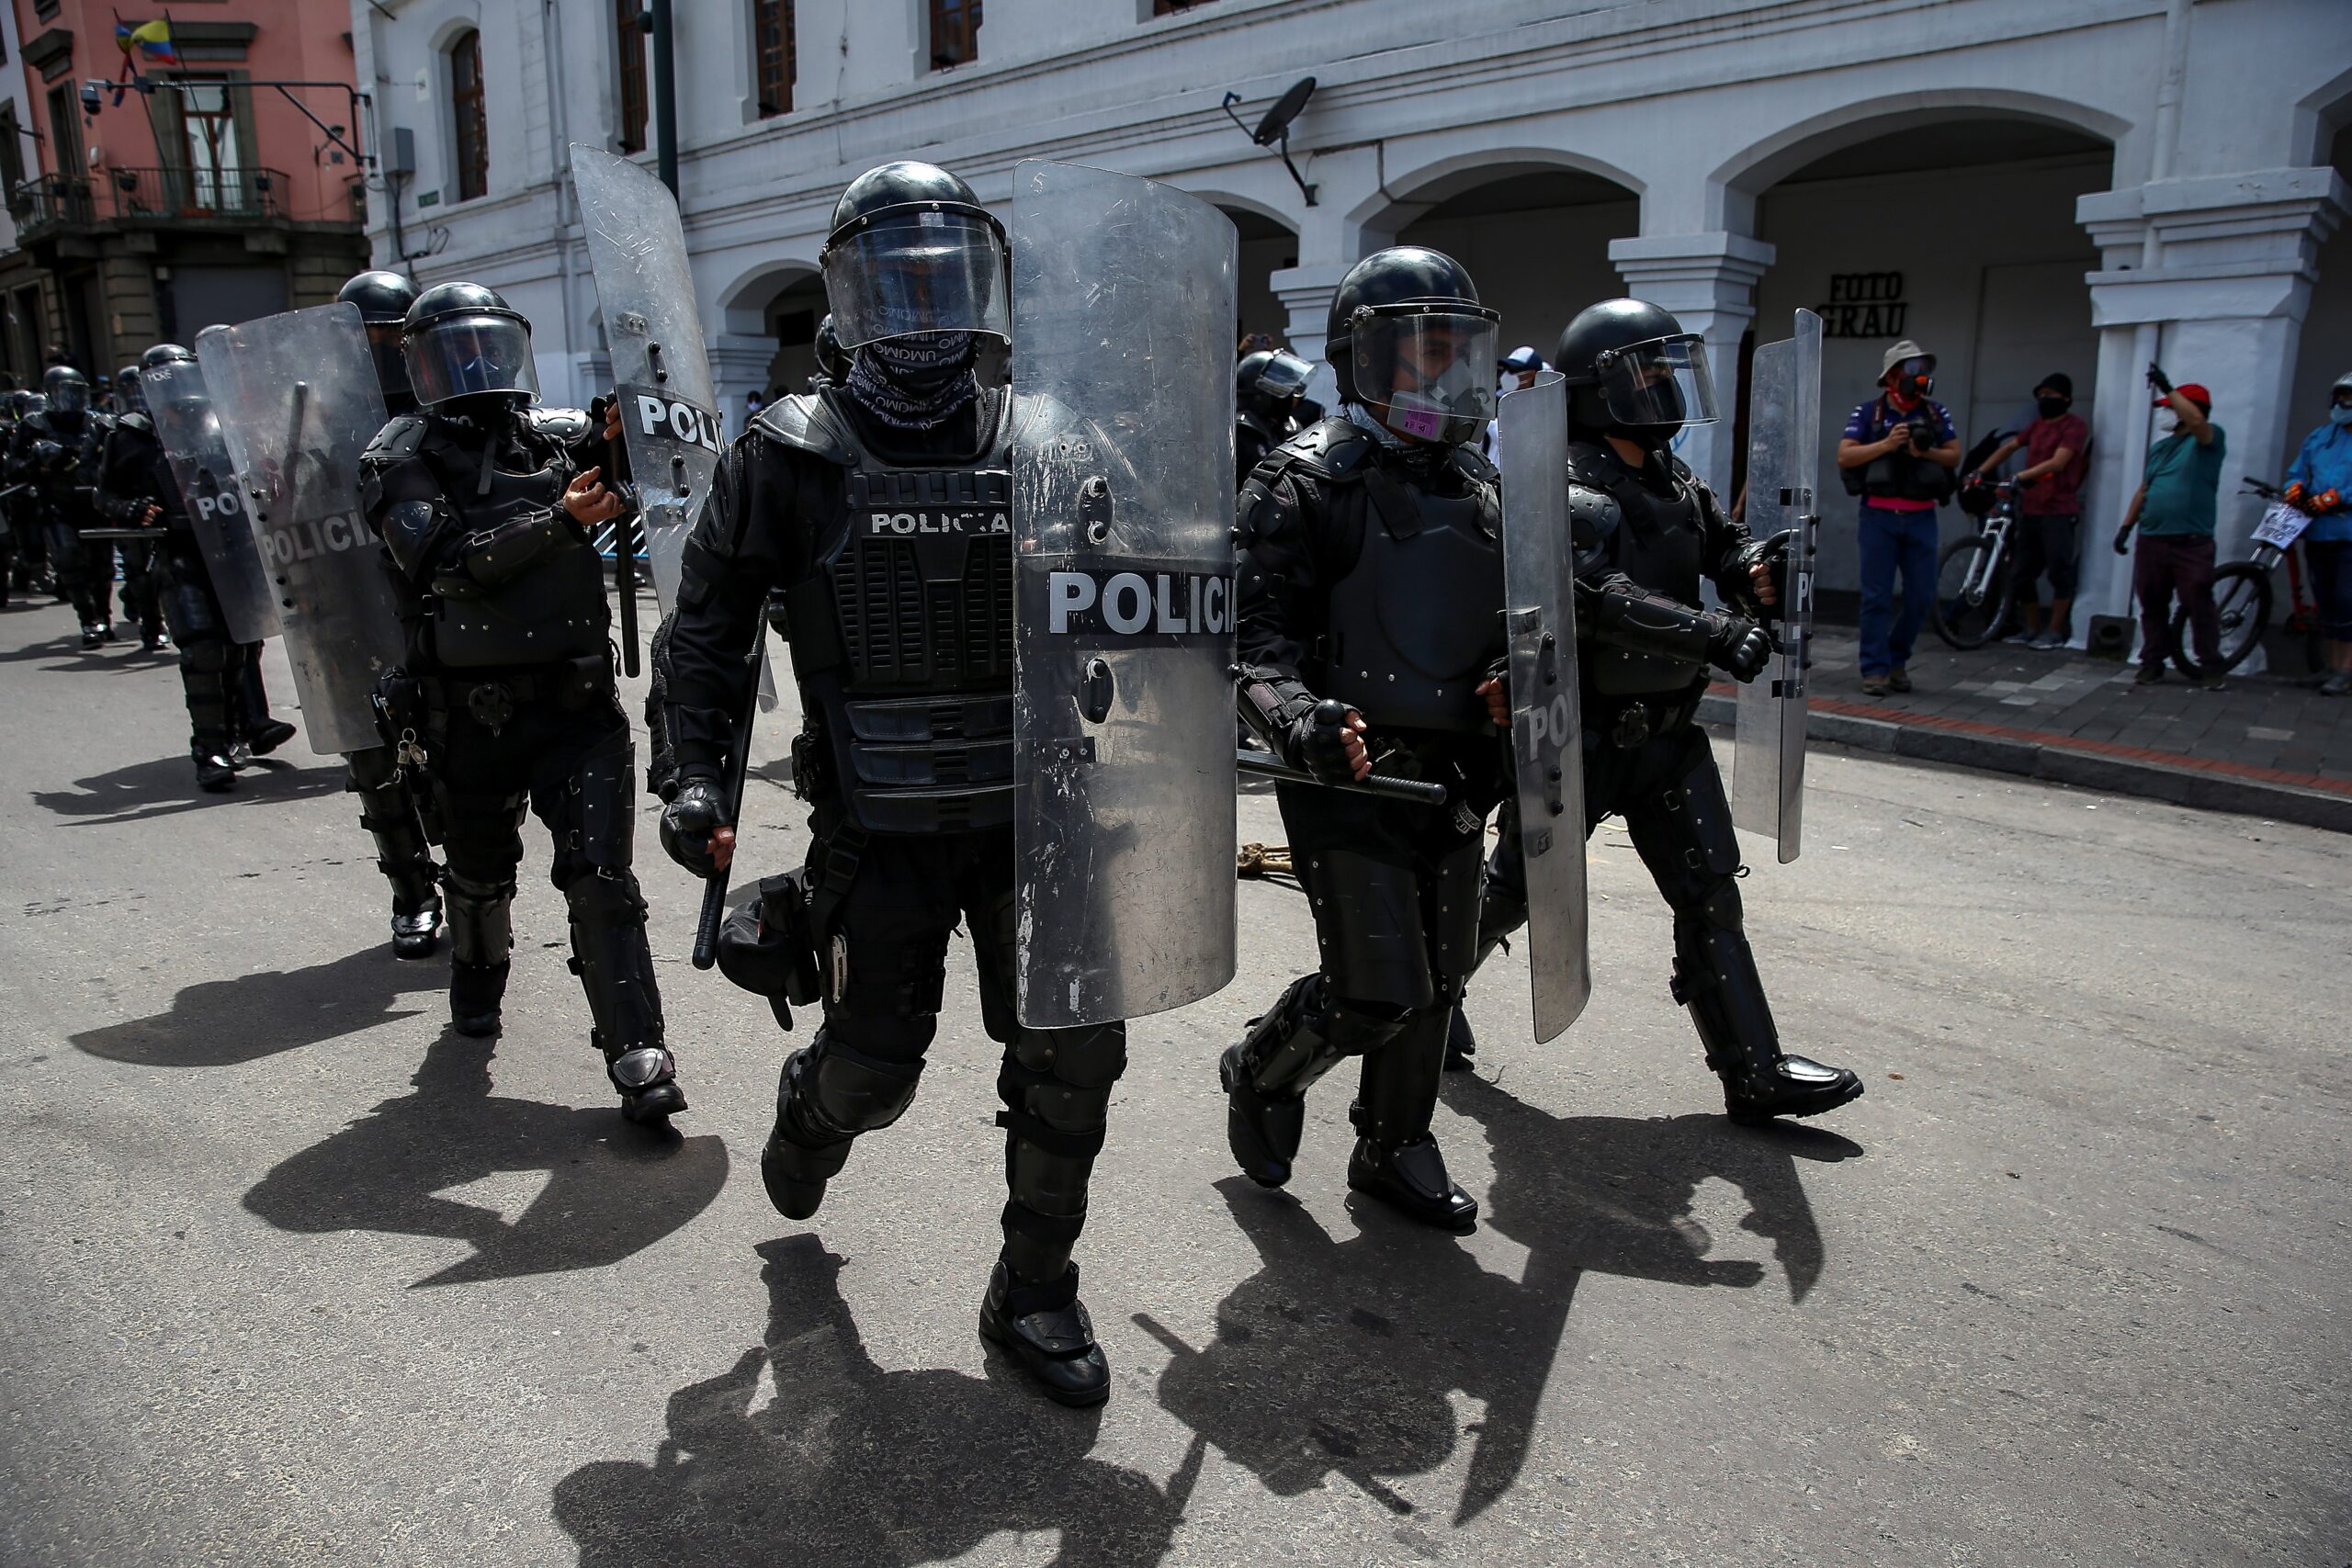 L'Équateur prépare un décret sur l'utilisation de la force légitime contre la criminalité